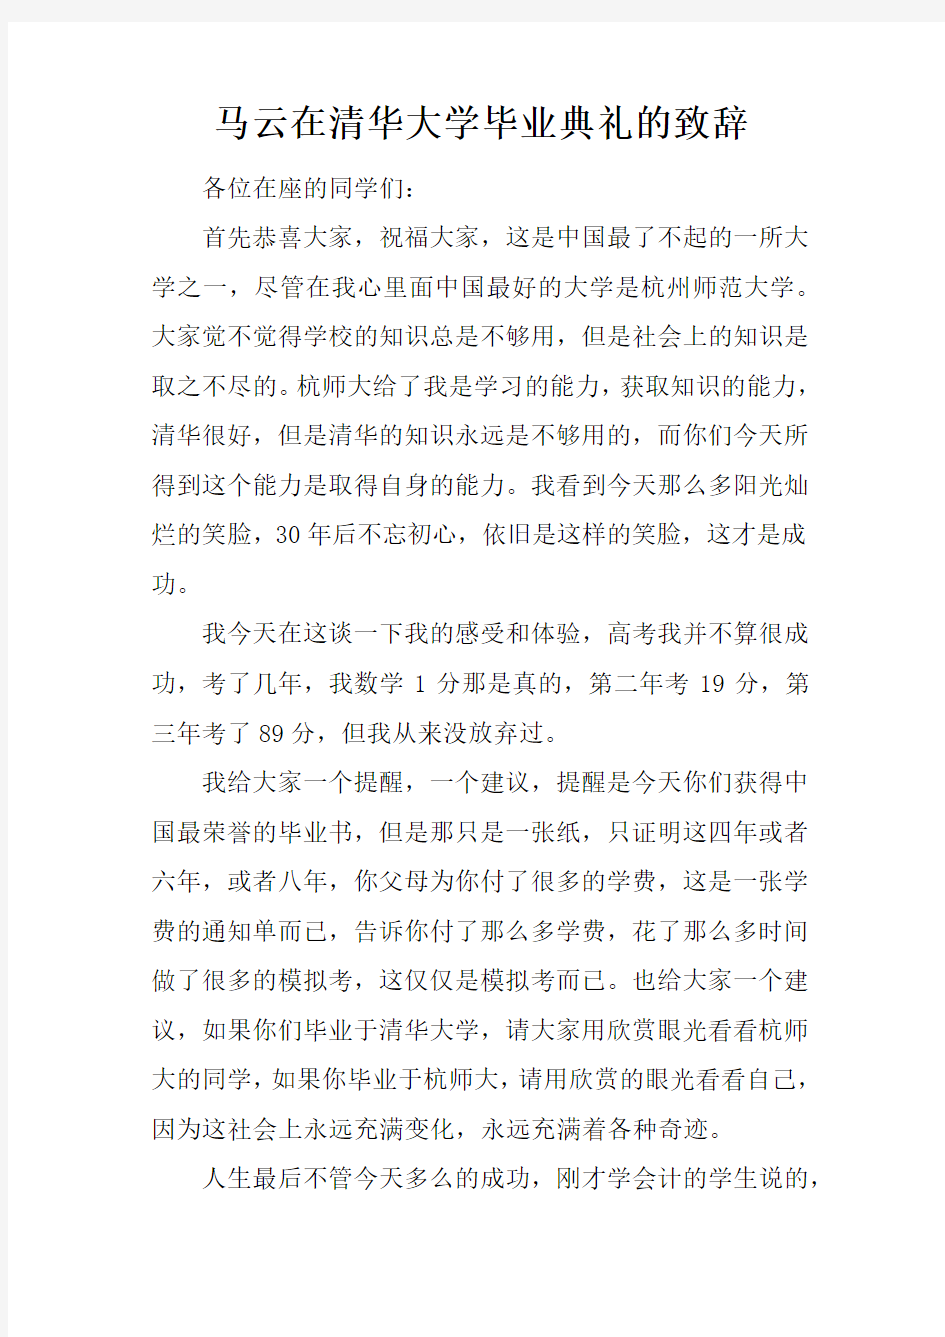 马云在清华大学毕业典礼的致辞